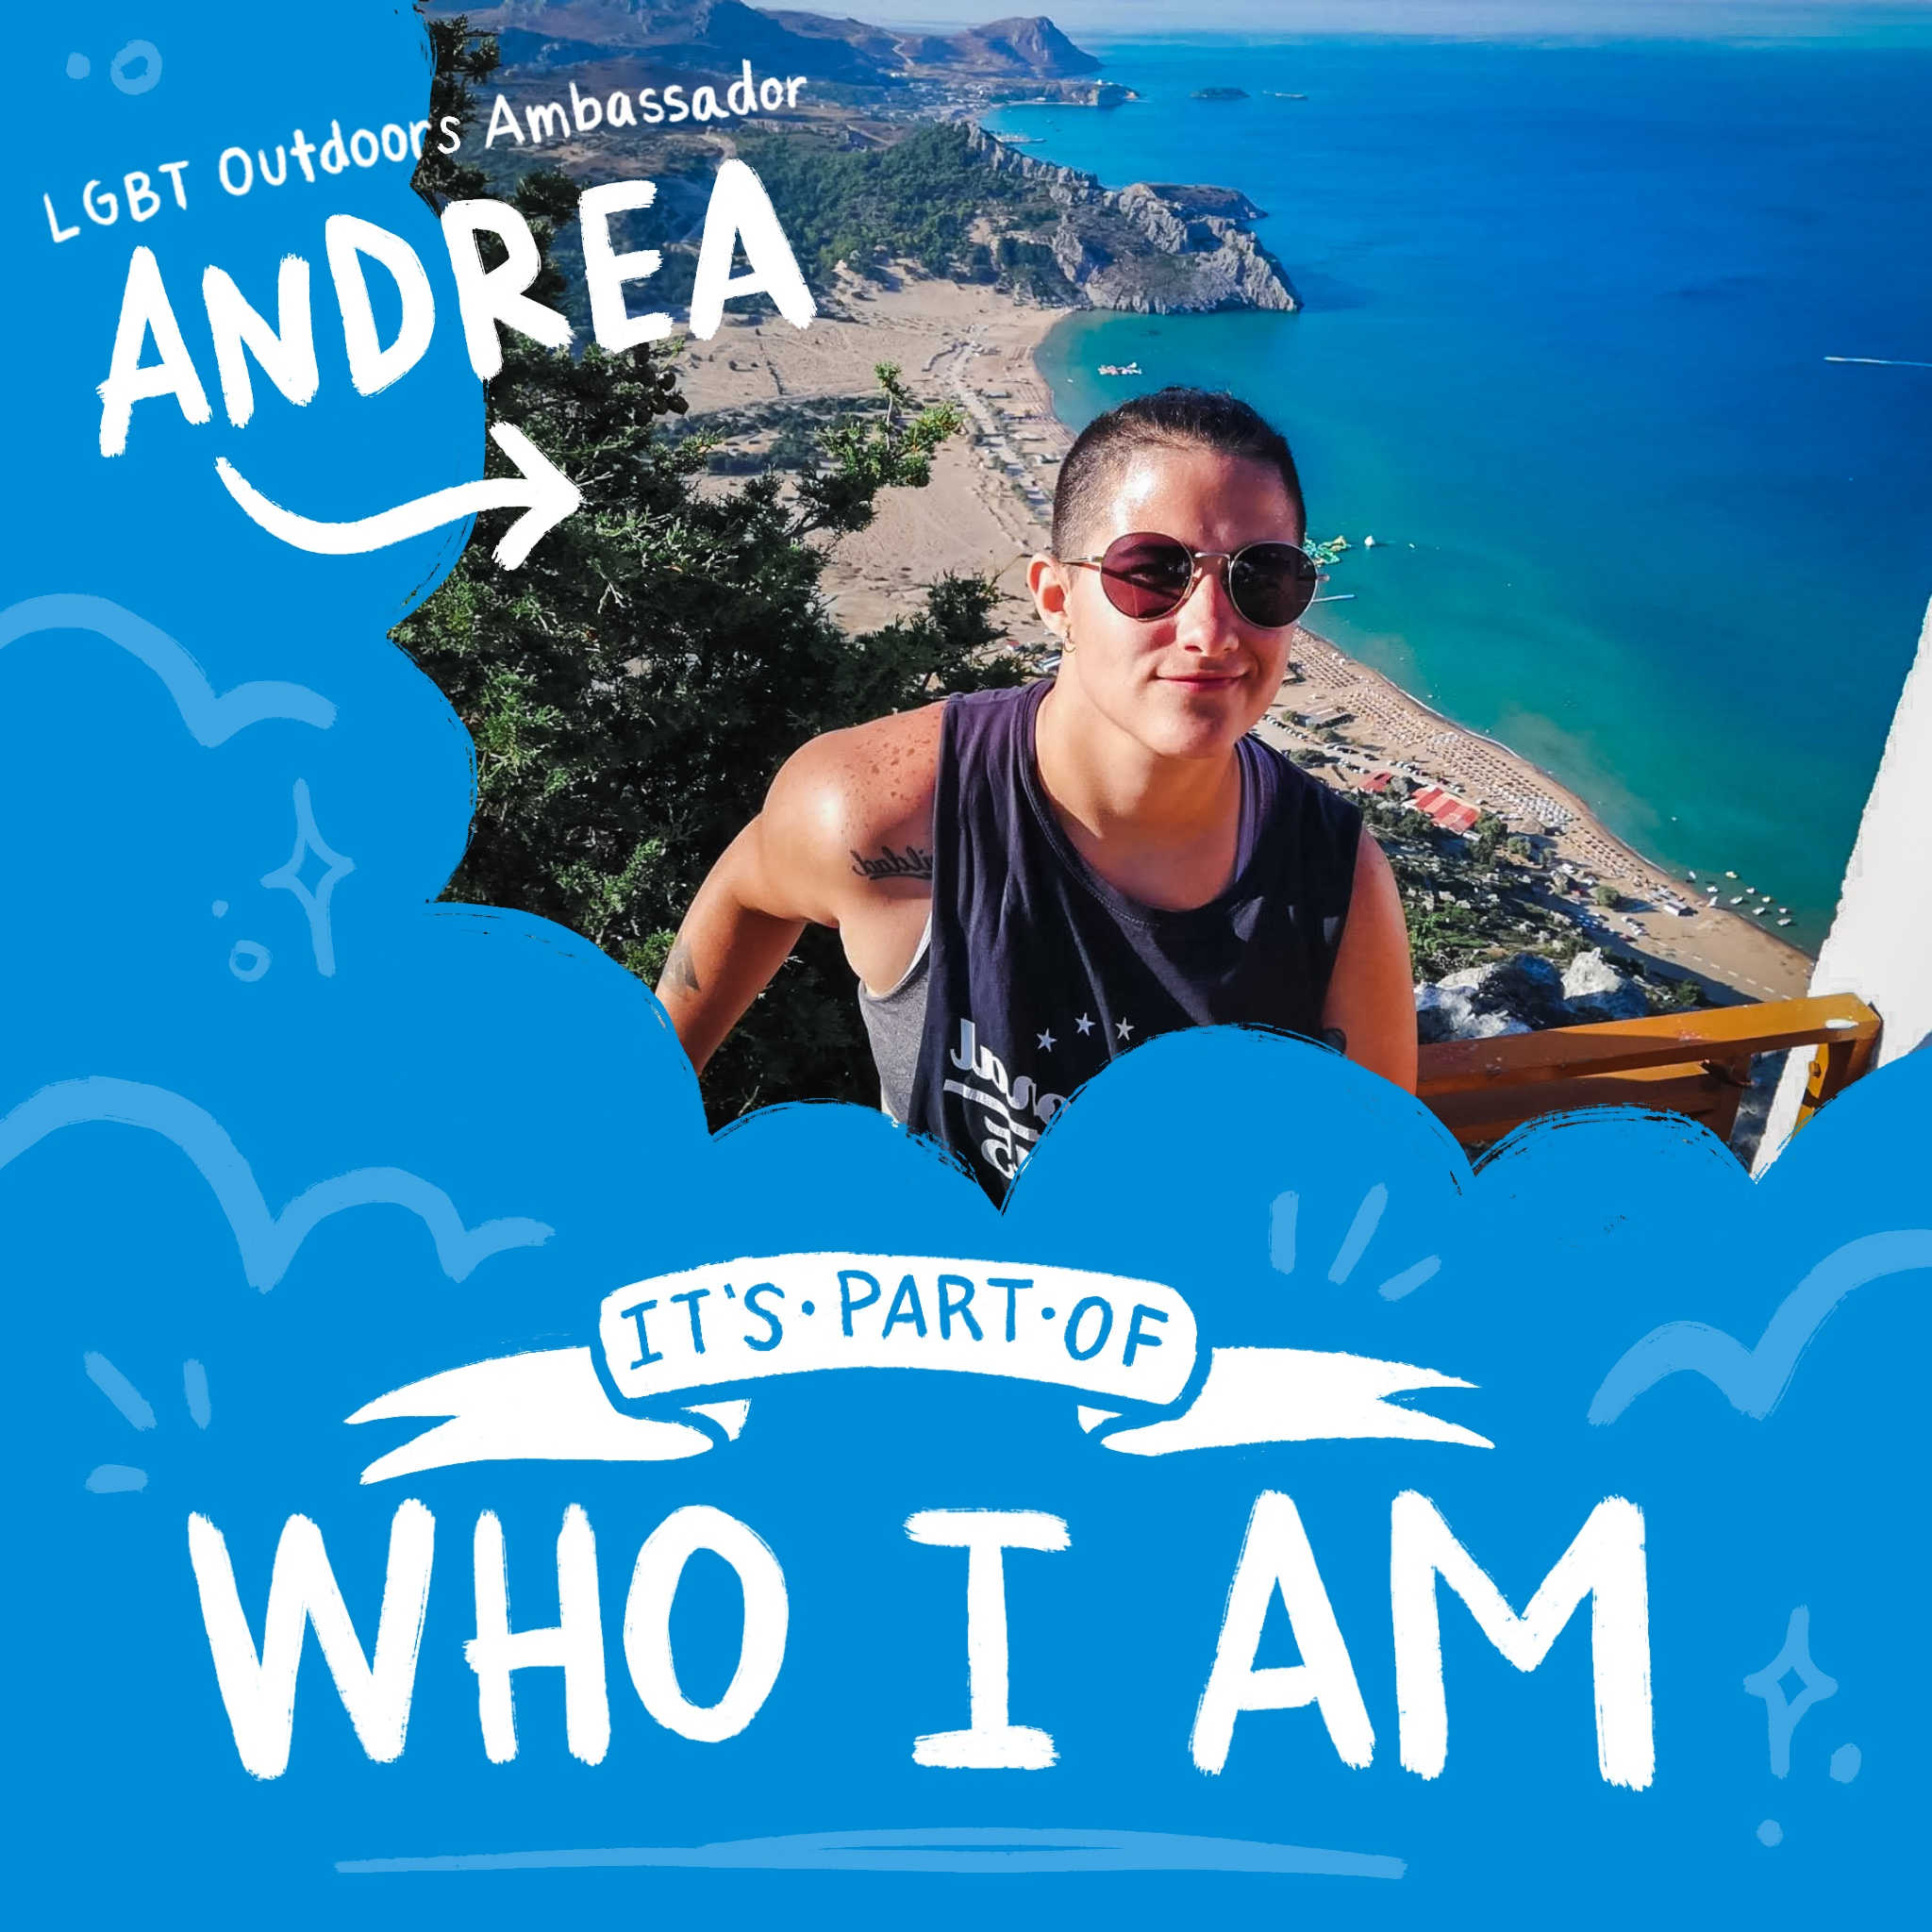 Meet LGBT Ambassador Andrea